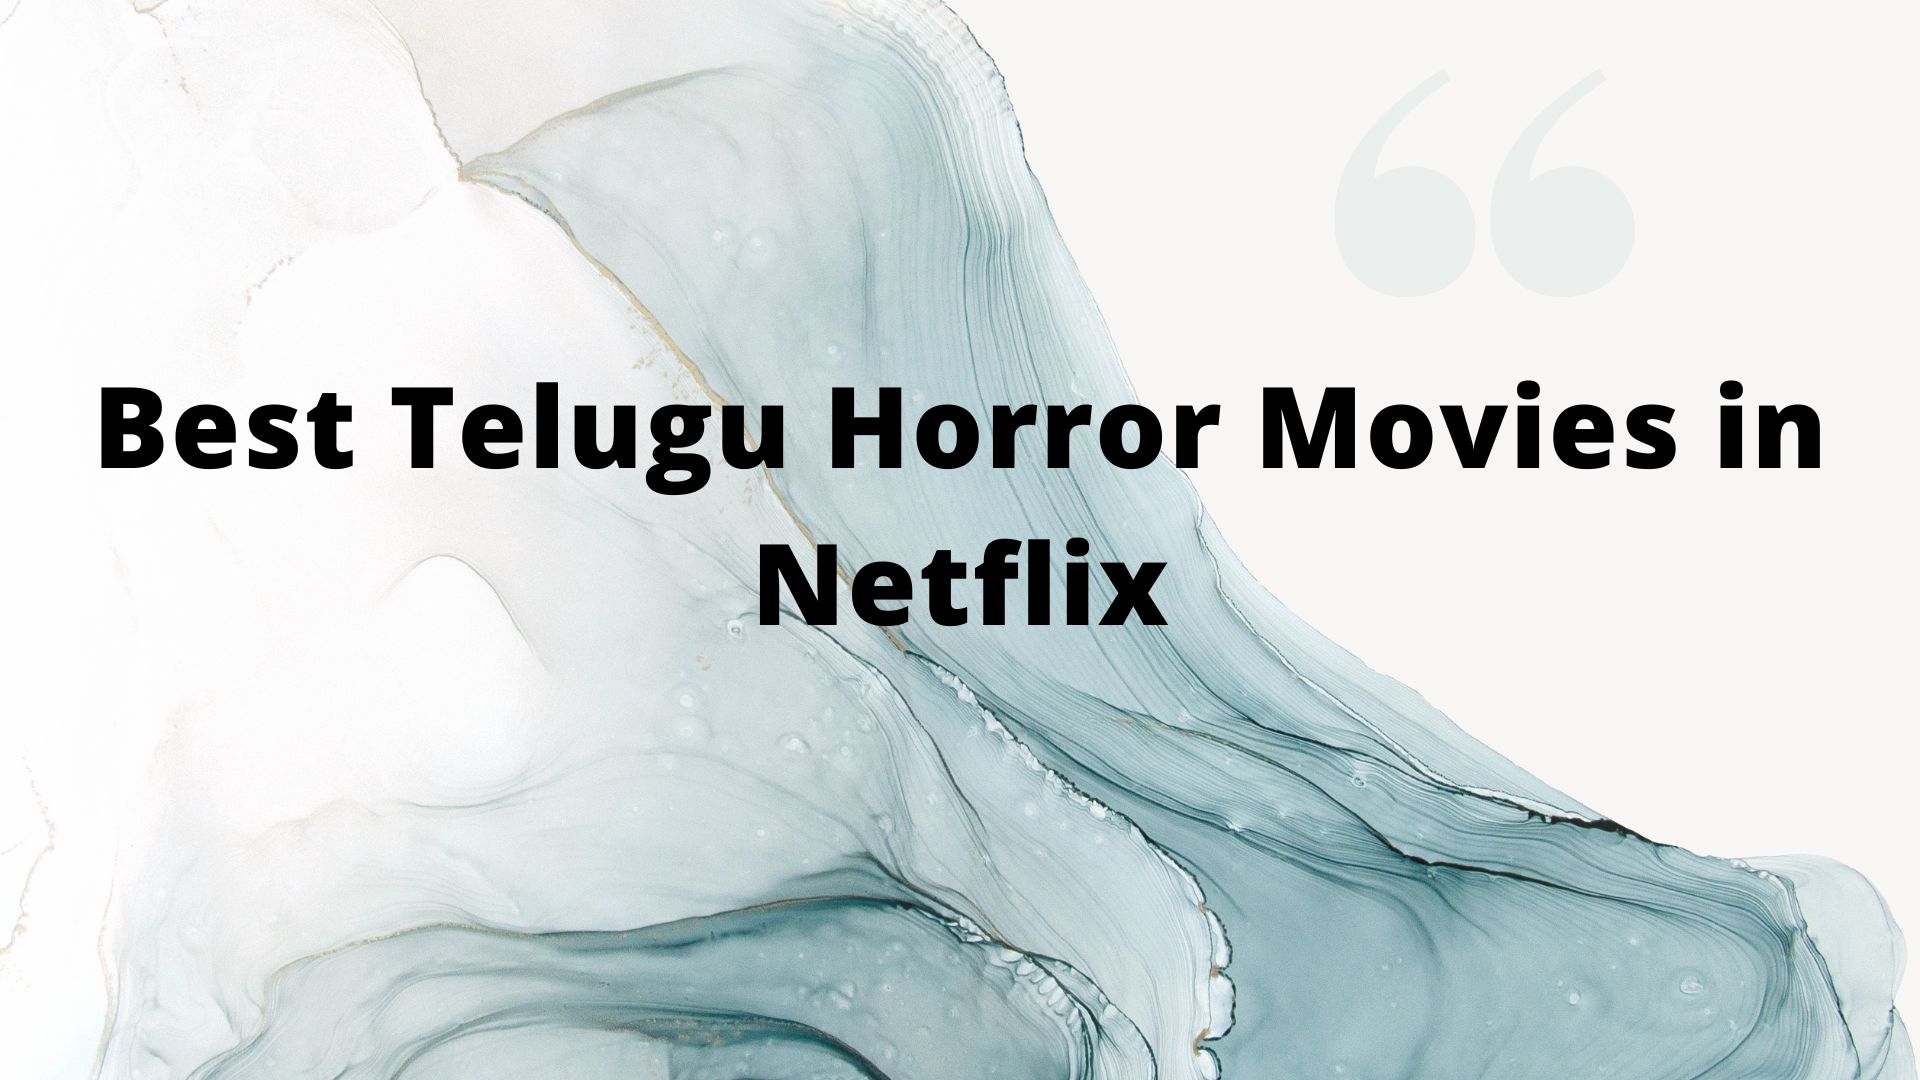 Best Telugu Horror Movies in Netflix